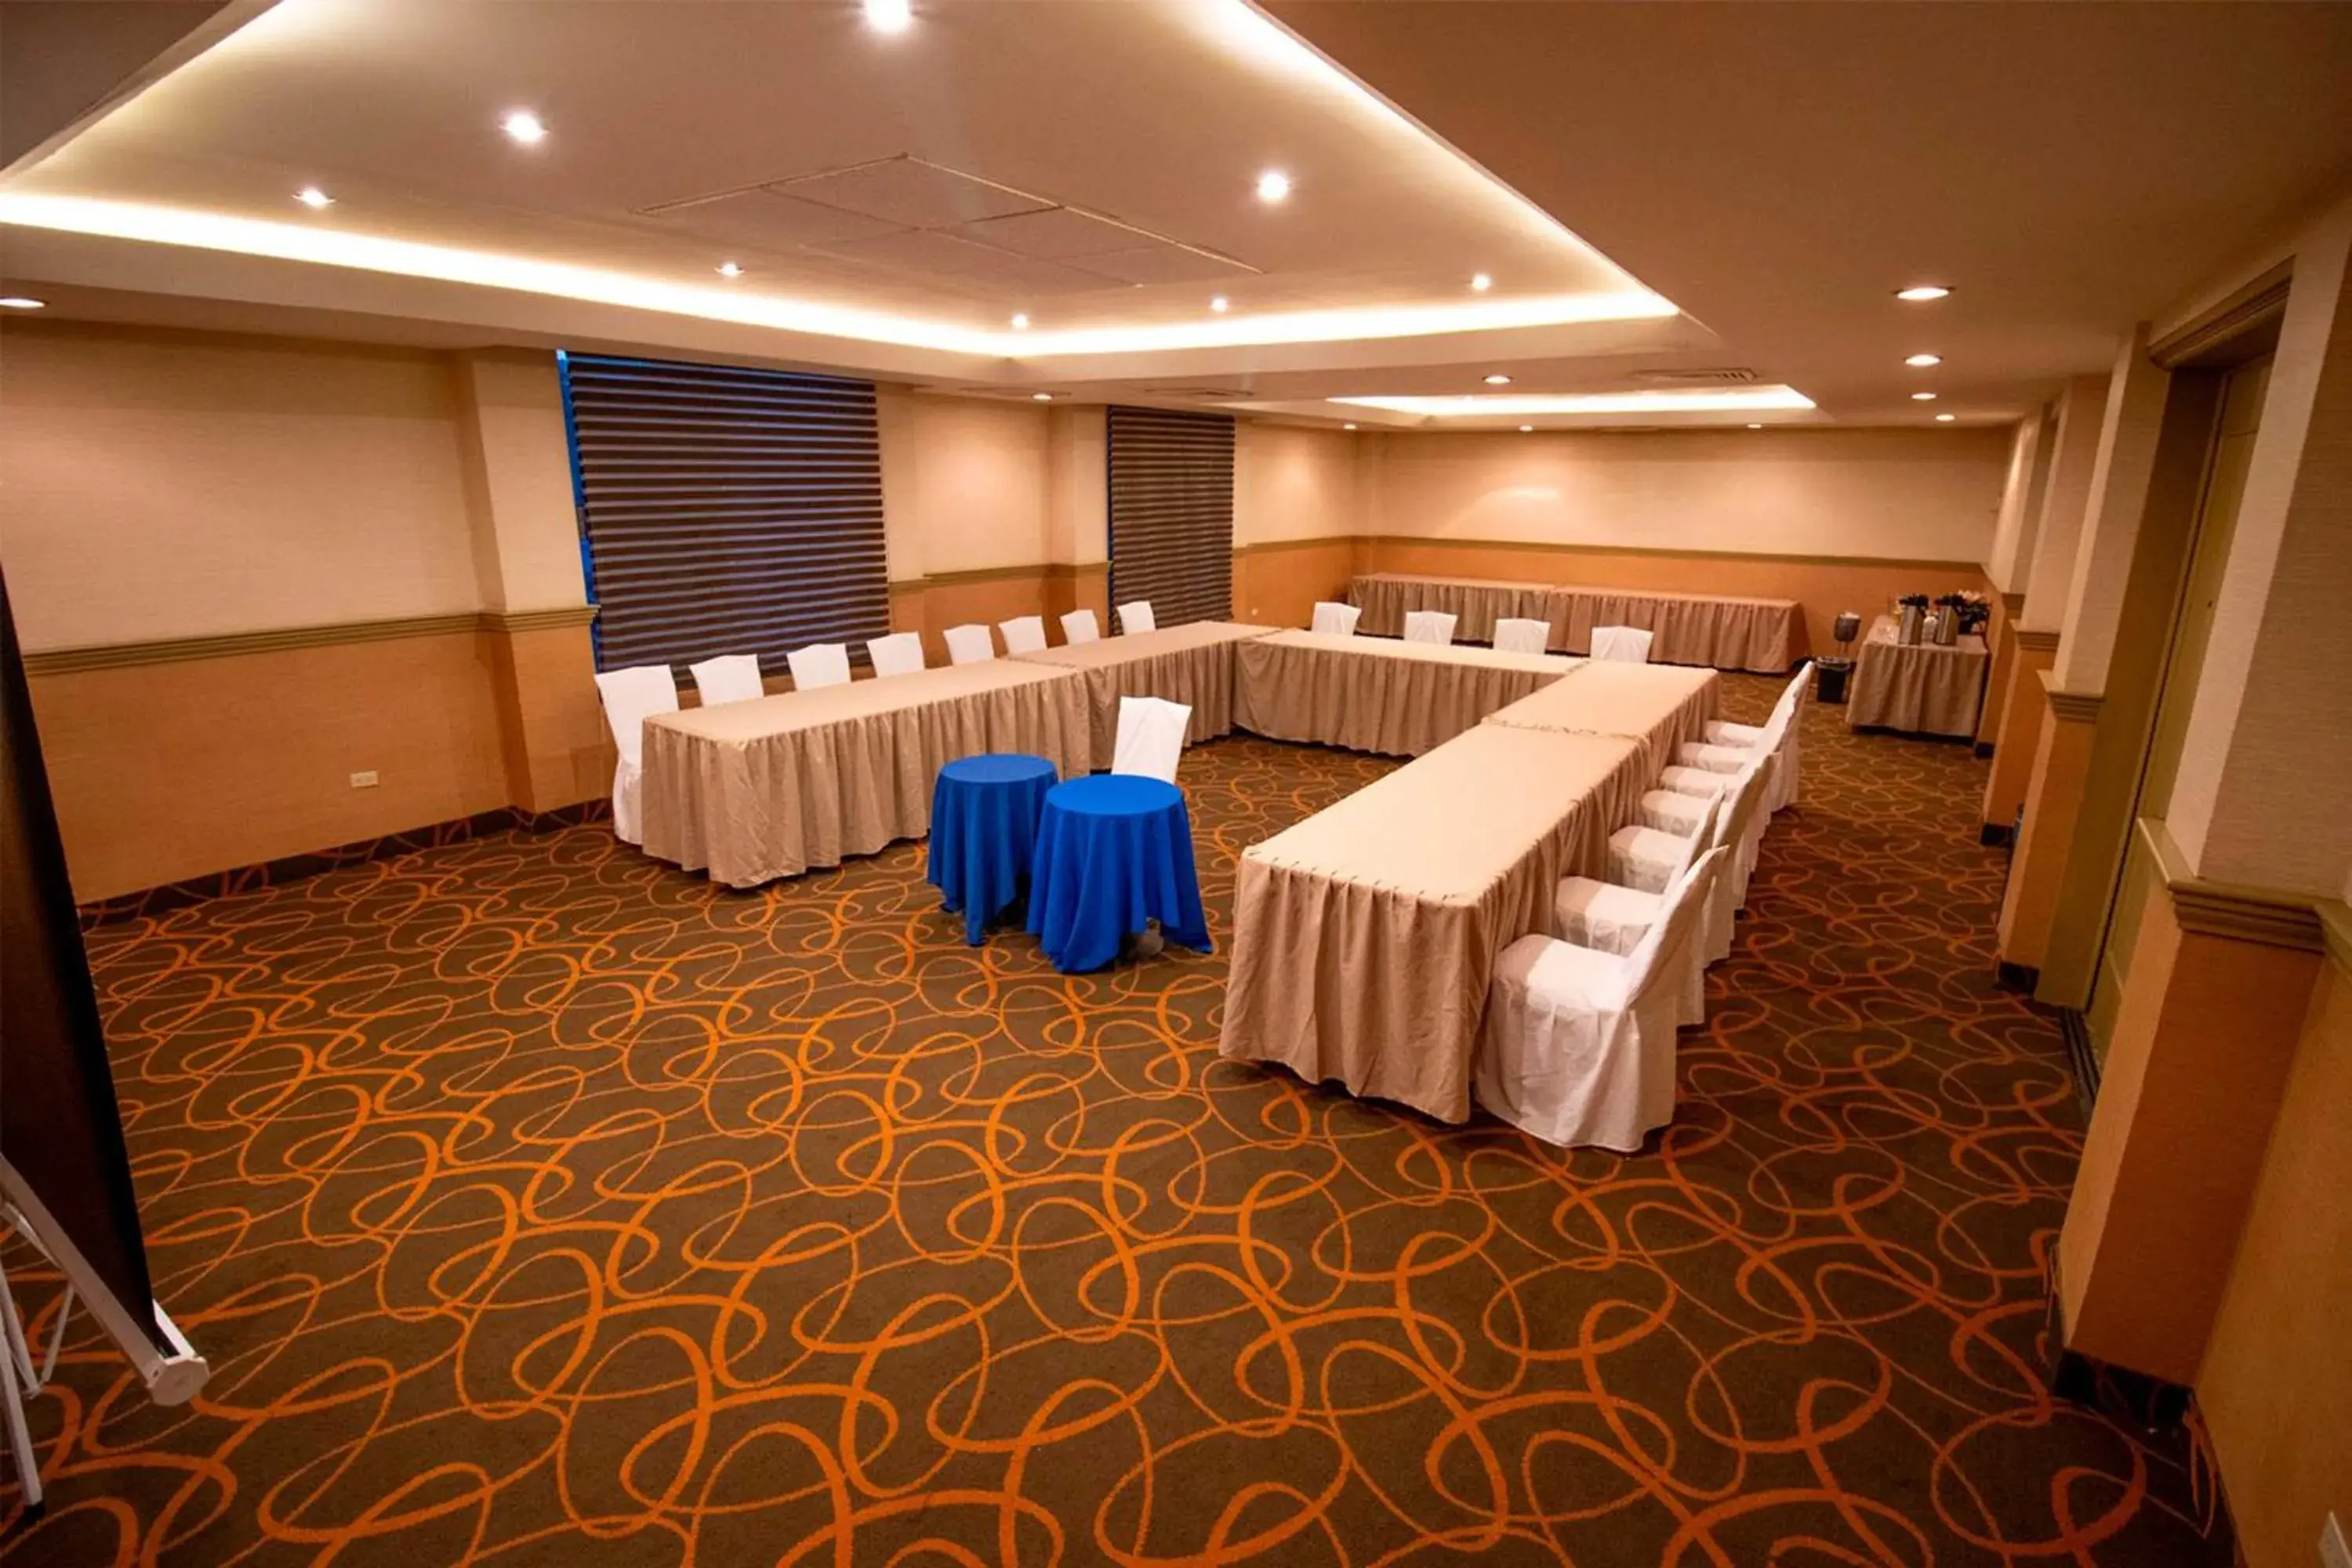 Meeting/conference room, Banquet Facilities in Araiza Palmira Hotel y Centro de Convenciones